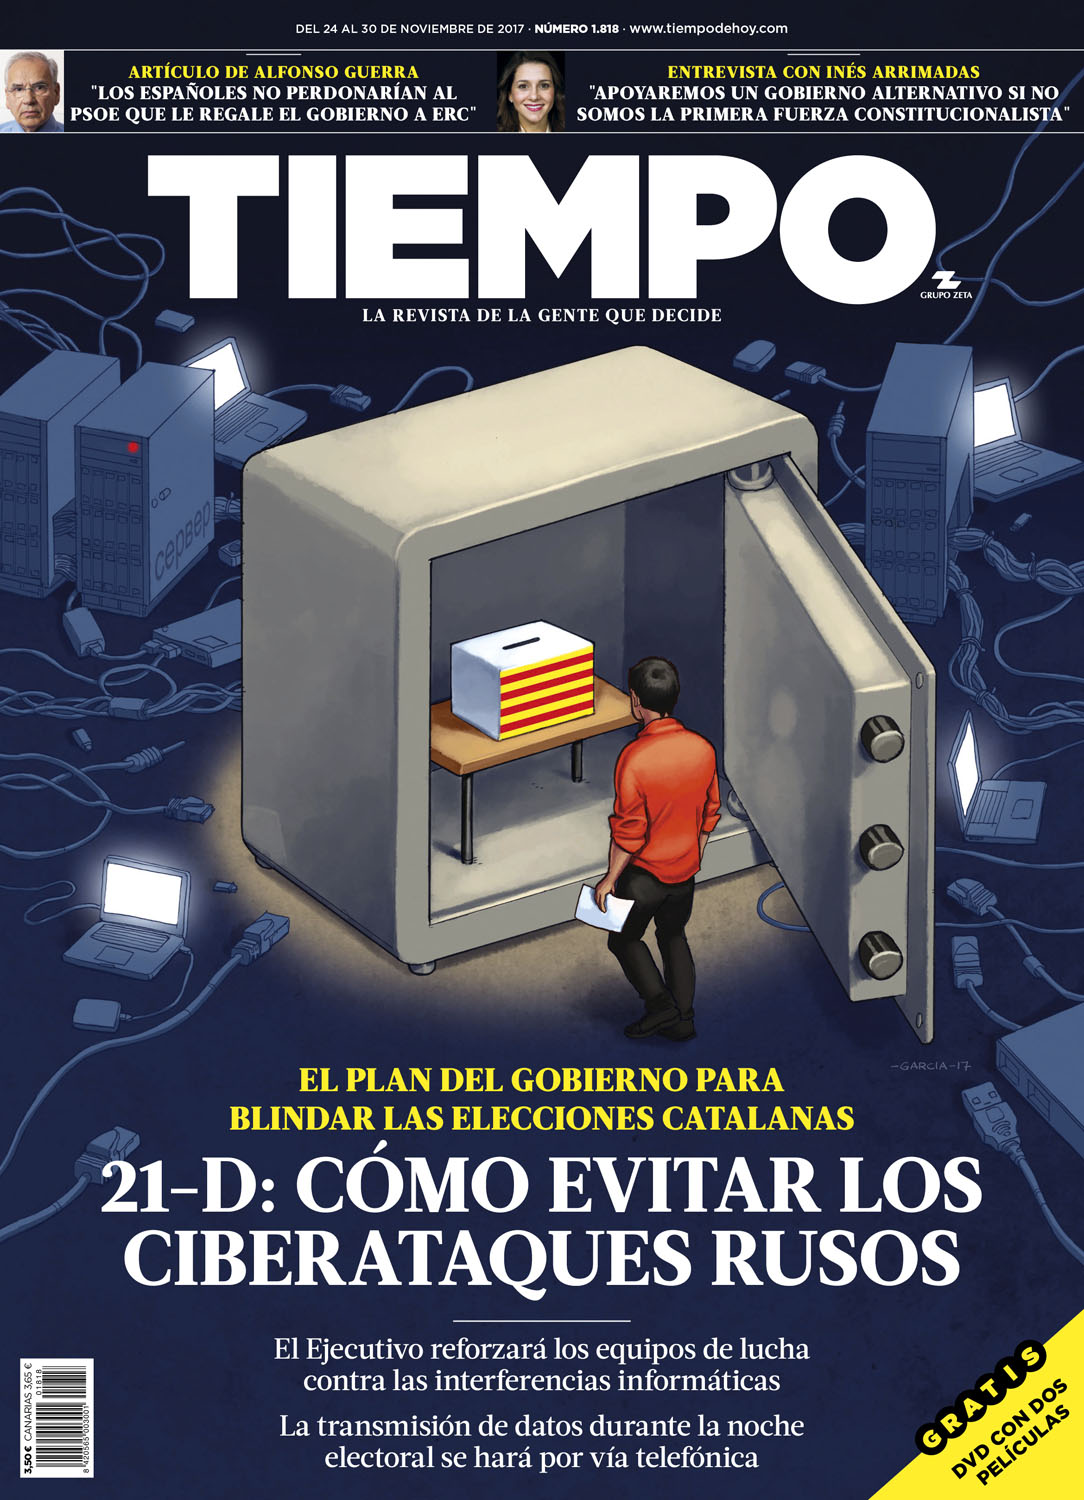 Daniel Garcia Art Illustration Tiempo Ilustracion Editoiral Elecciones Cataluna Gobierno Ciberataques Rusia Hackers Revista Portada 21D